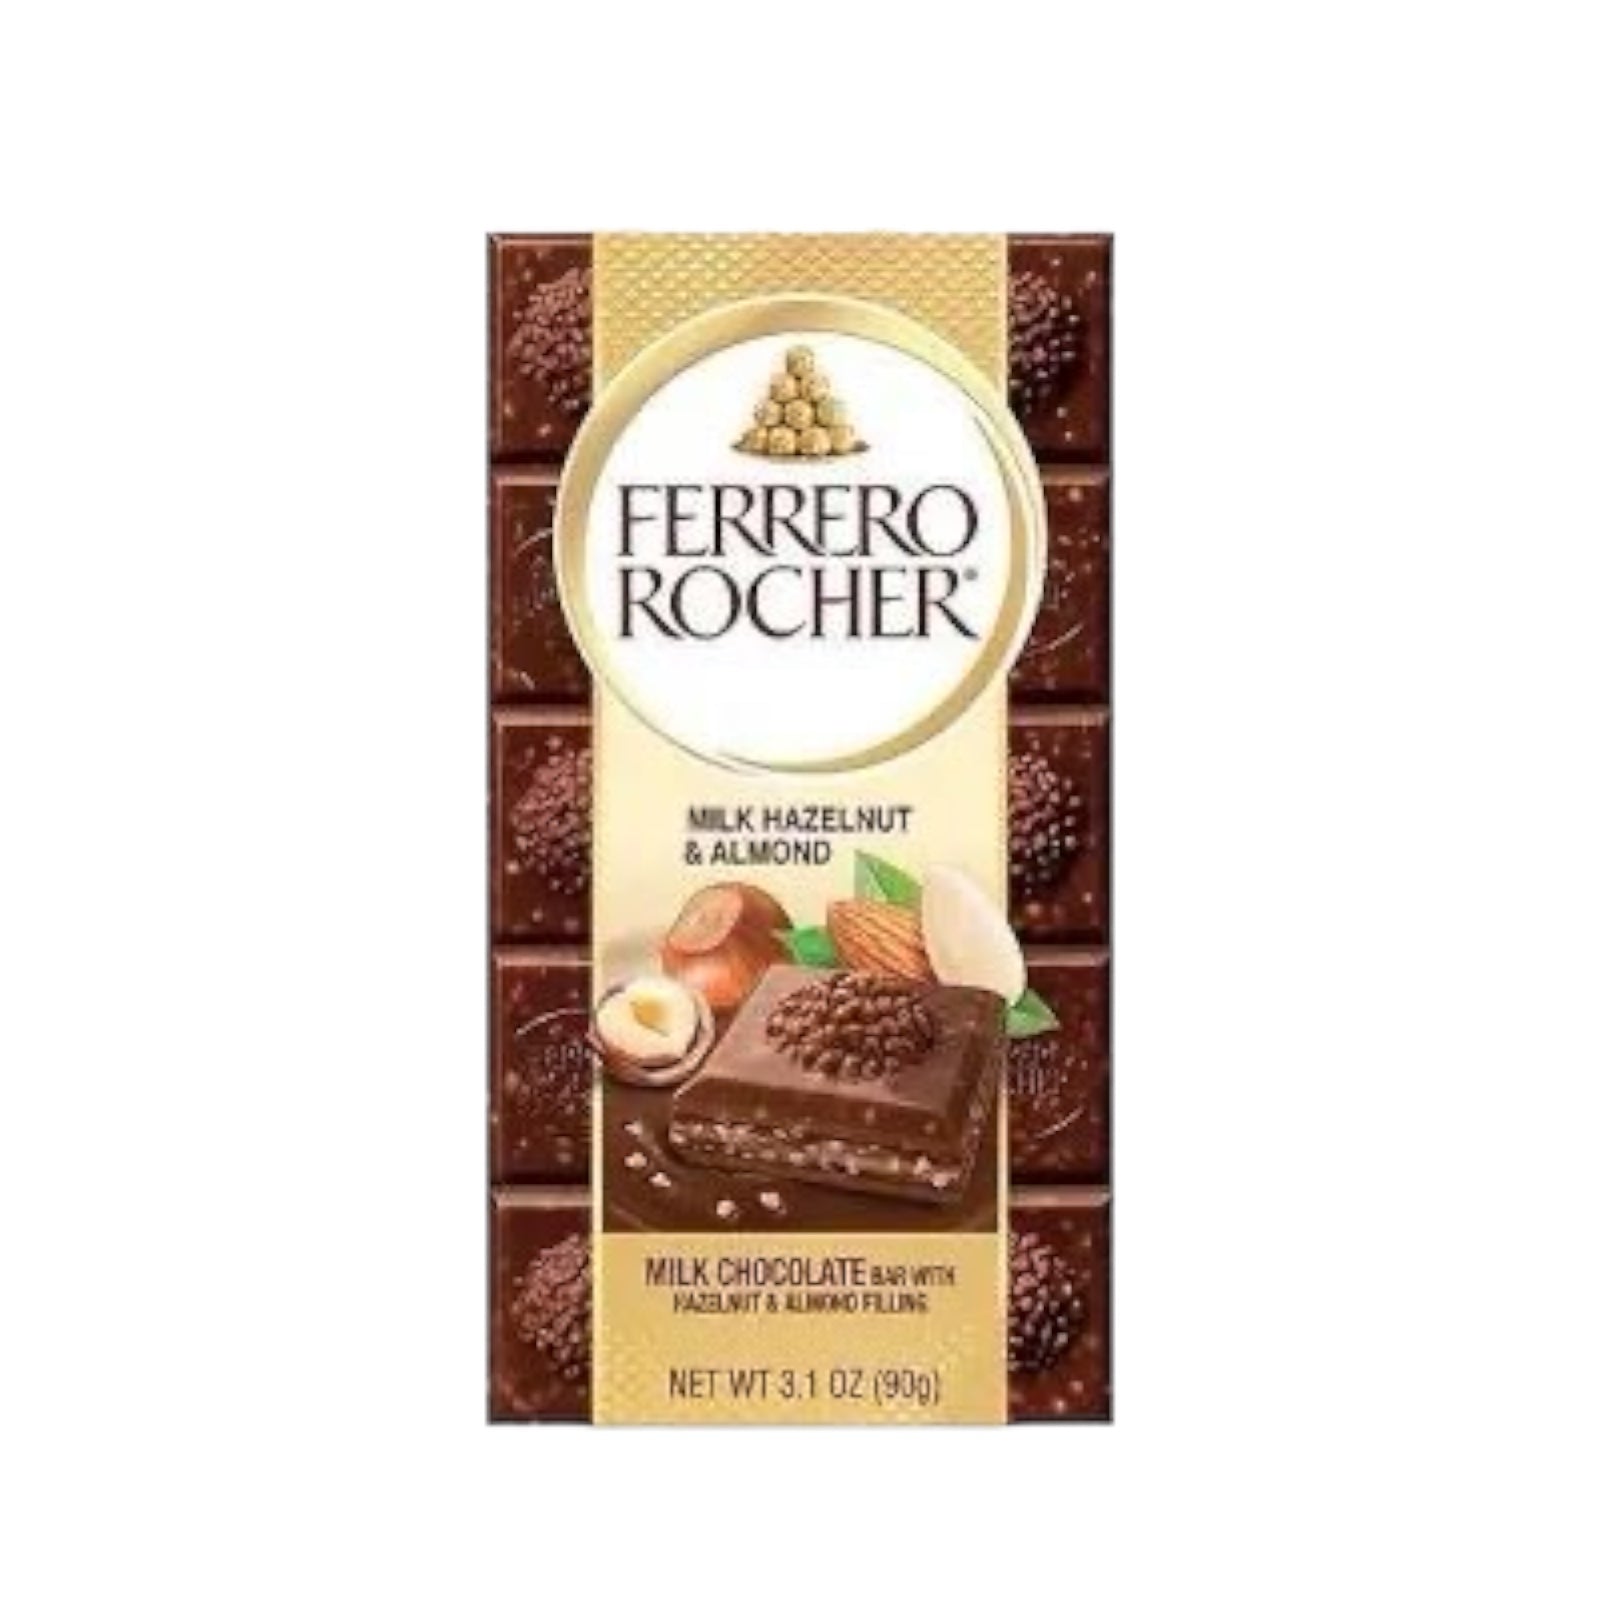 Ferrero Rocher Milk Hazelnut & Almond Chocolate Bar 90g